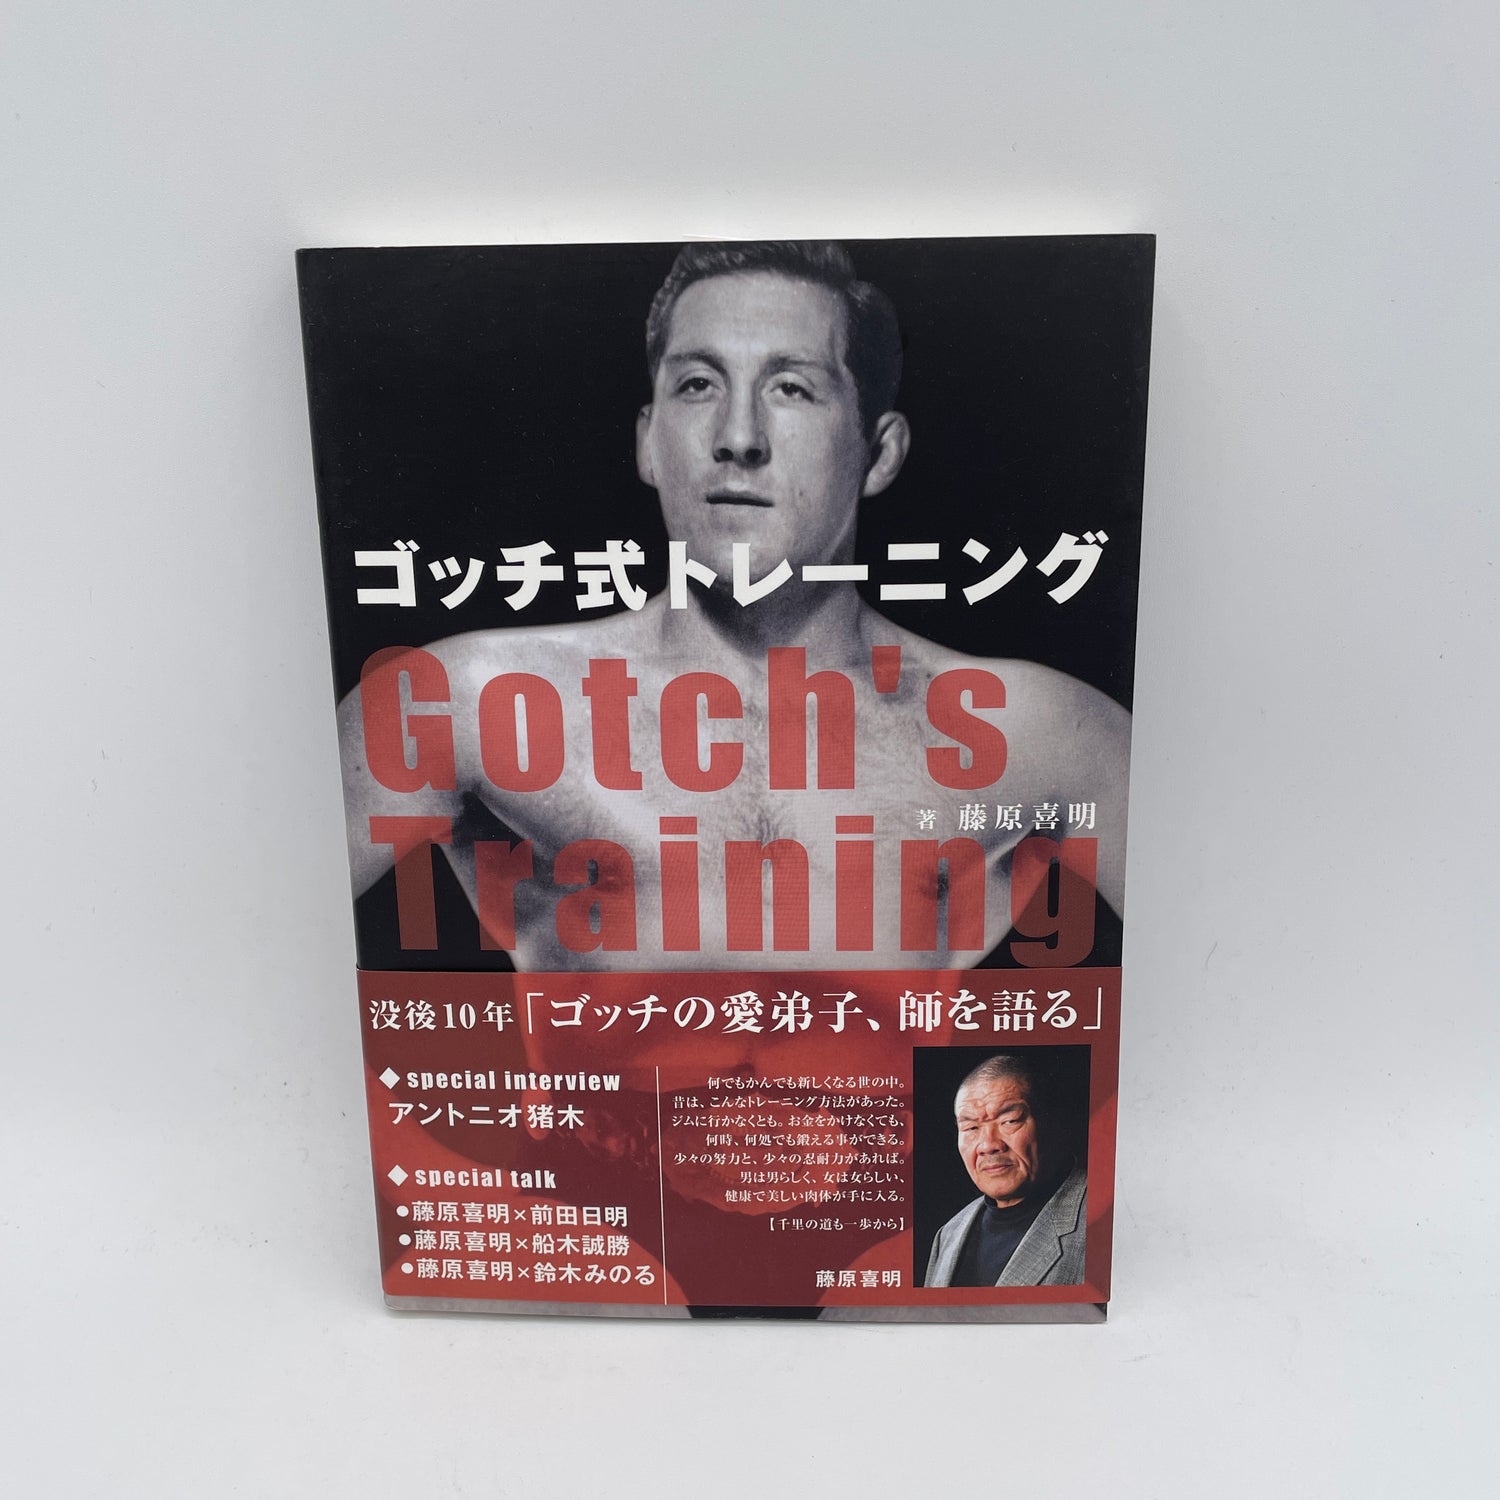 Karl Gotch's Training Book by Yoshiaki Fujiwara